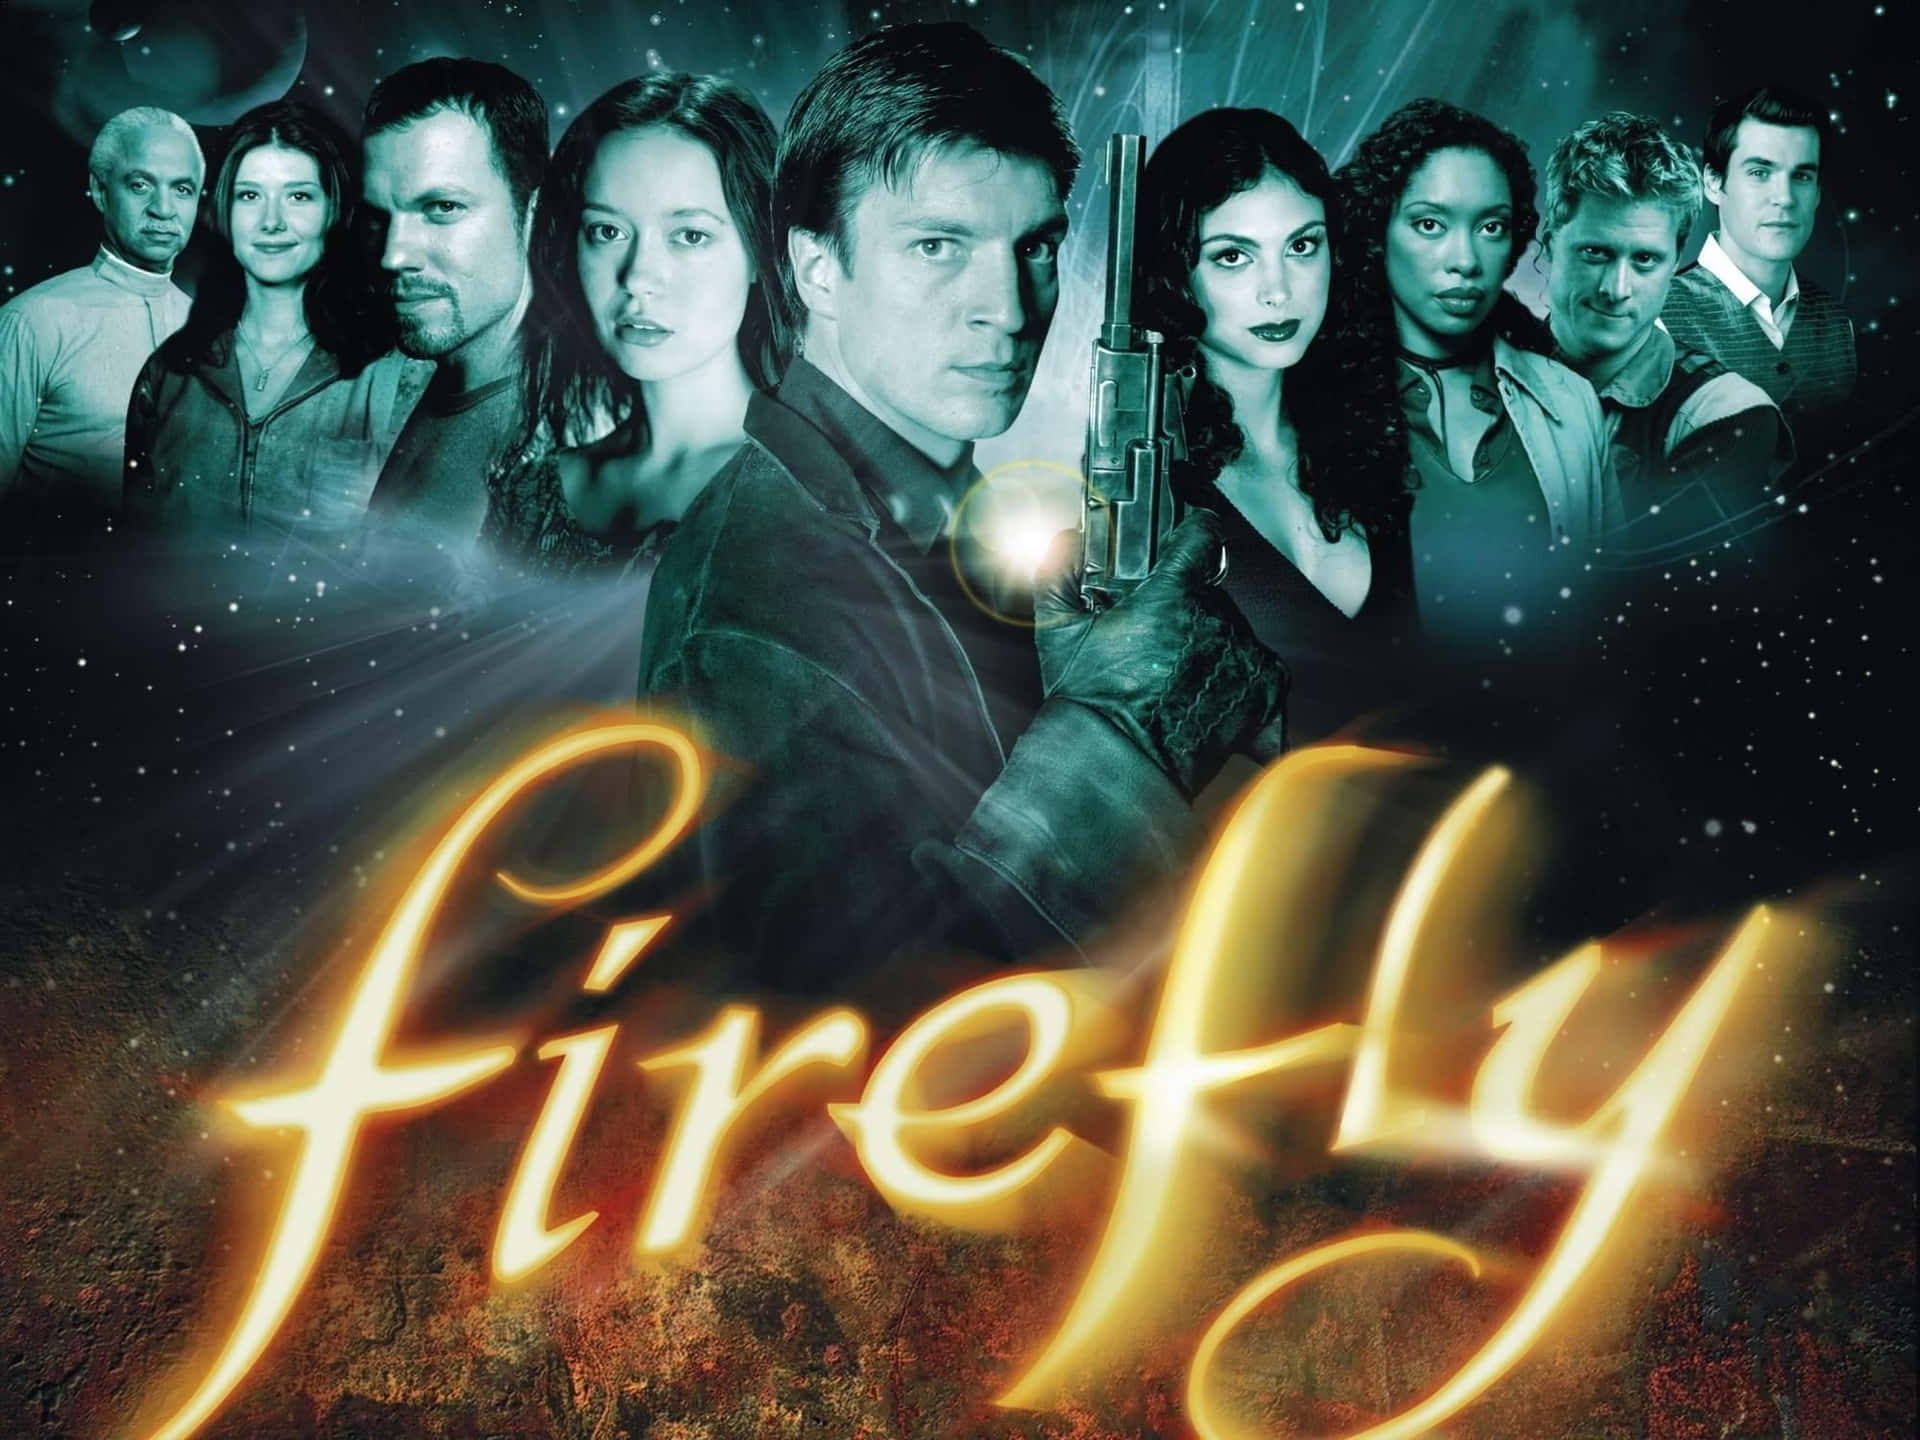 Atripulação Da Nave Serenity Vista Na Série De Televisão De Ficção Científica Firefly. Papel de Parede